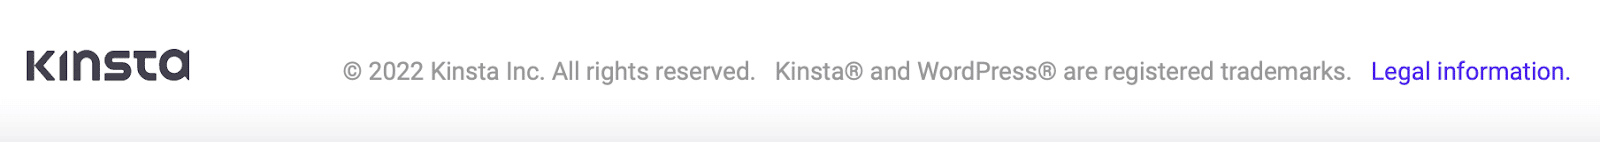 La nota sul copyright di Kinsta si trova nel footer del sito web